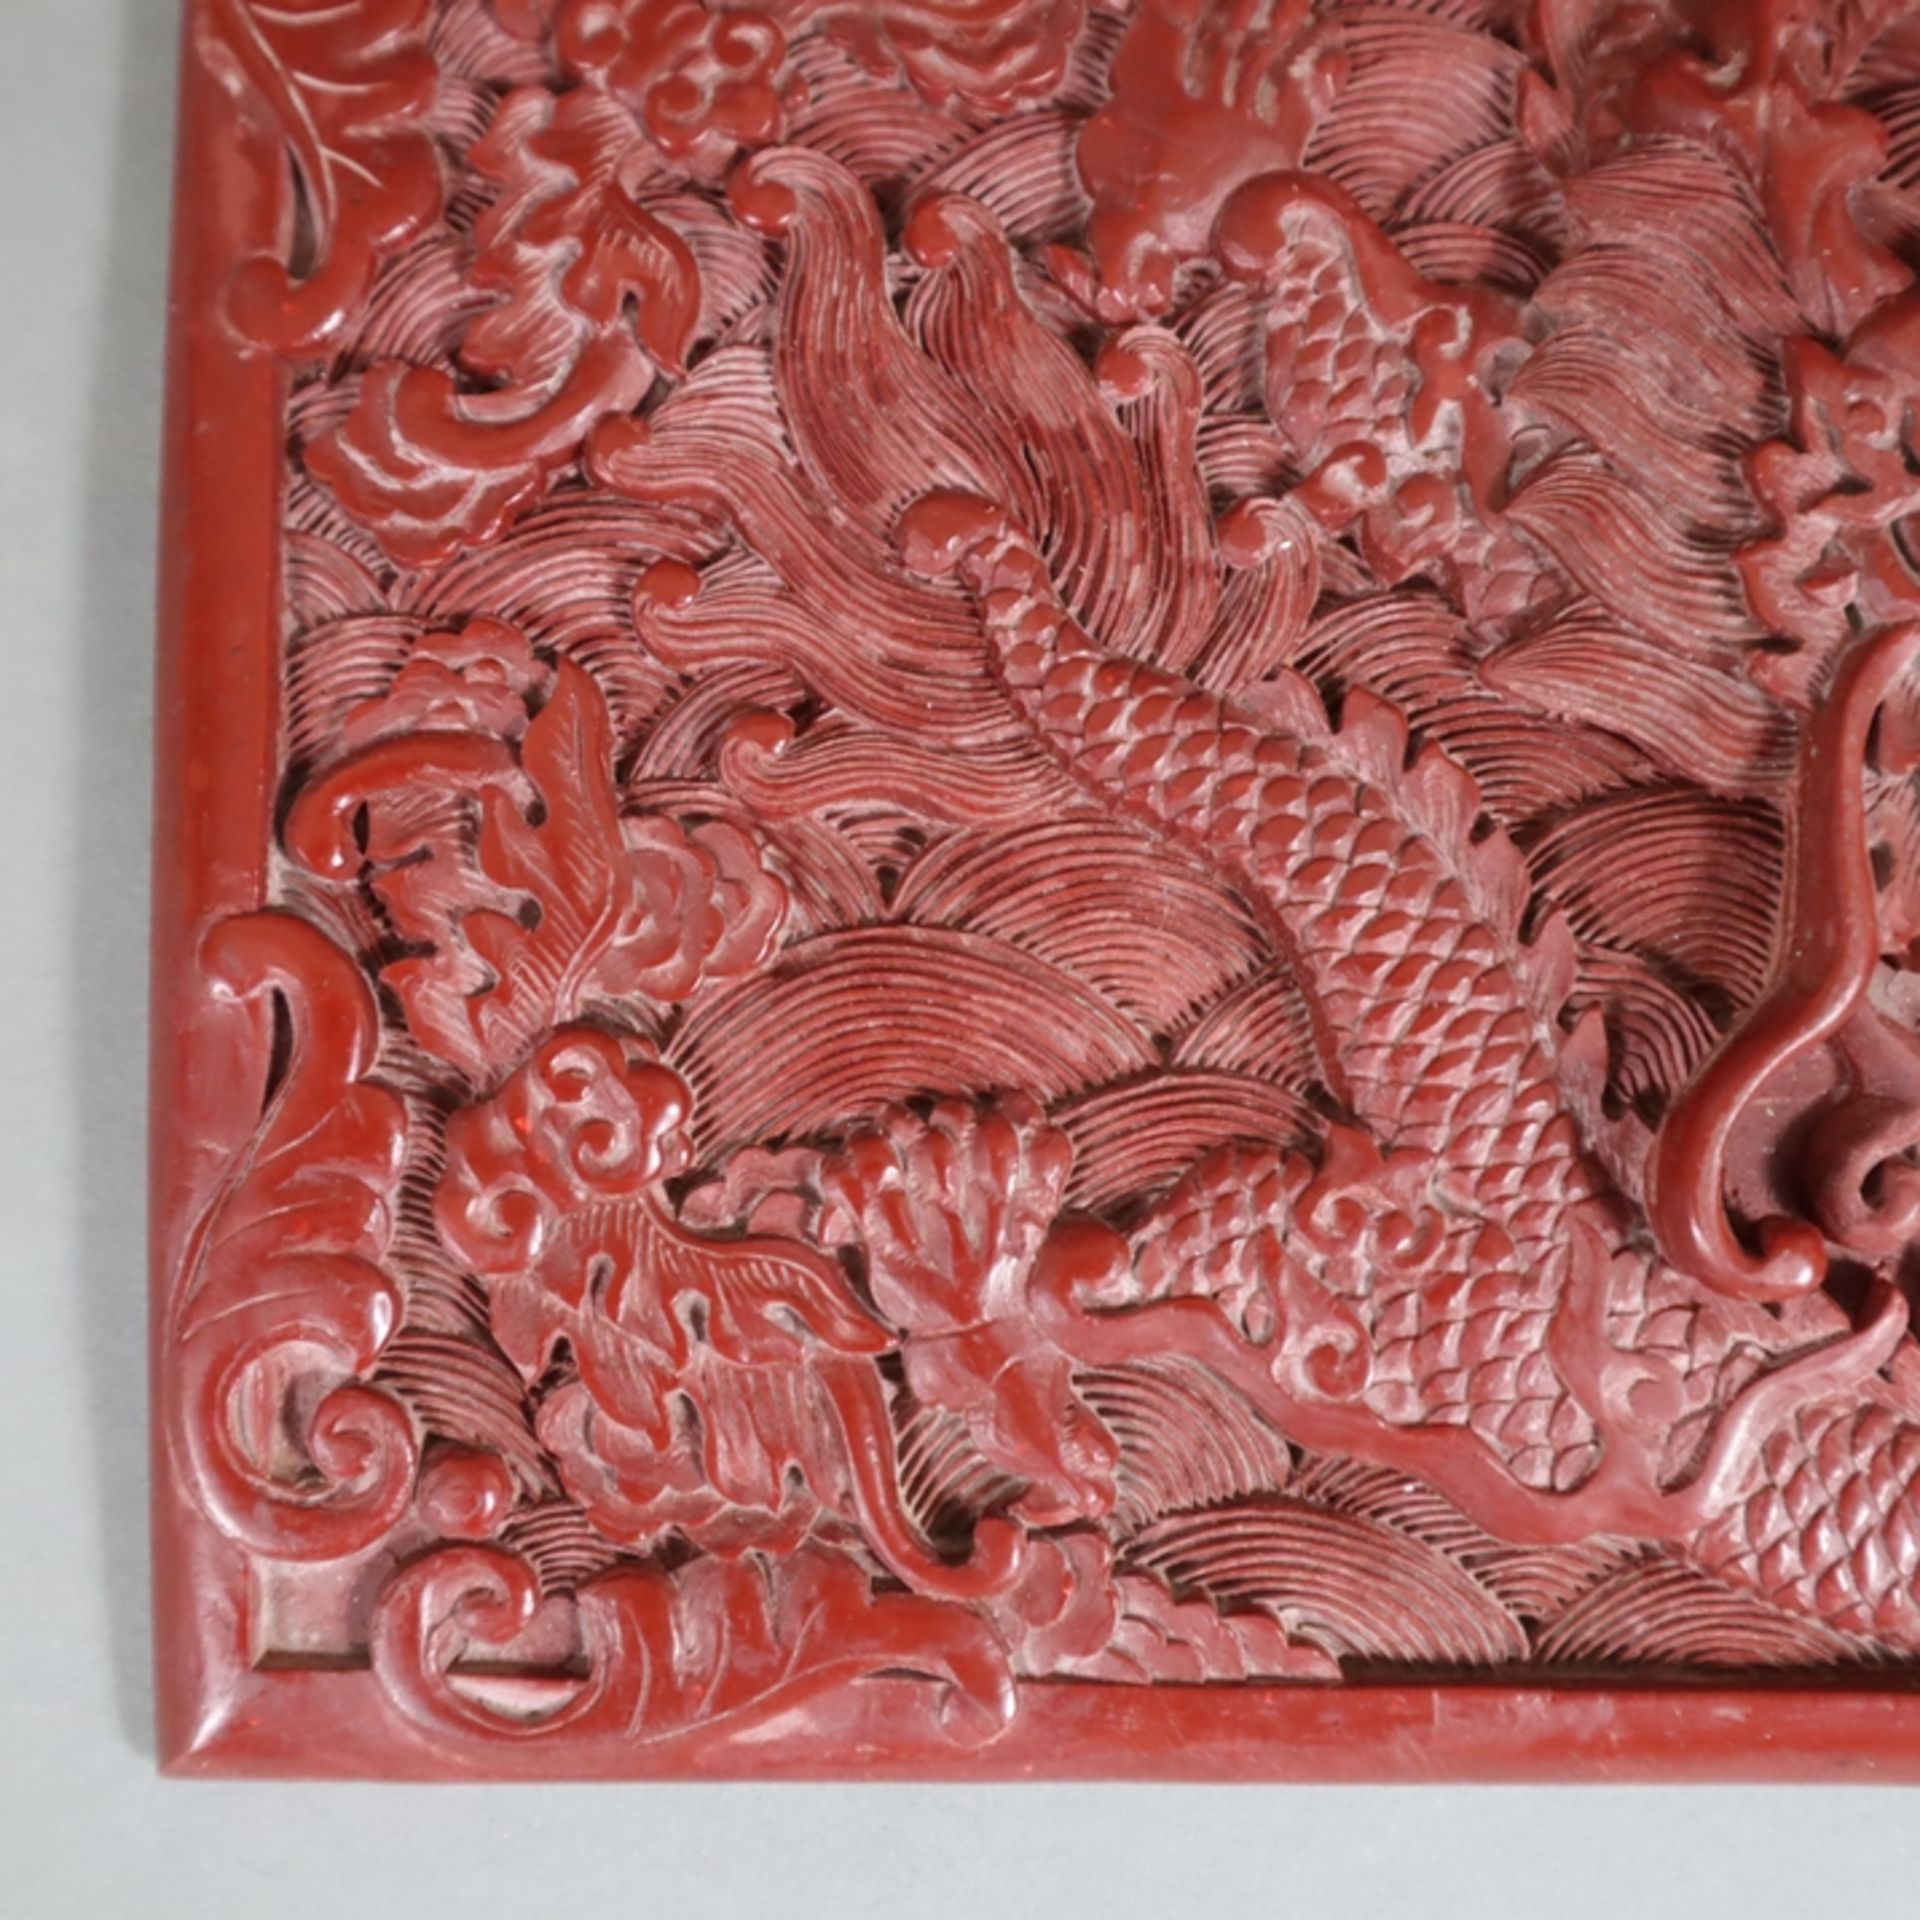 Große Lackplakette - China, roter Lack, rechteckig, in Reliefarbeit gewundener fünfklauiger Drache  - Bild 5 aus 6